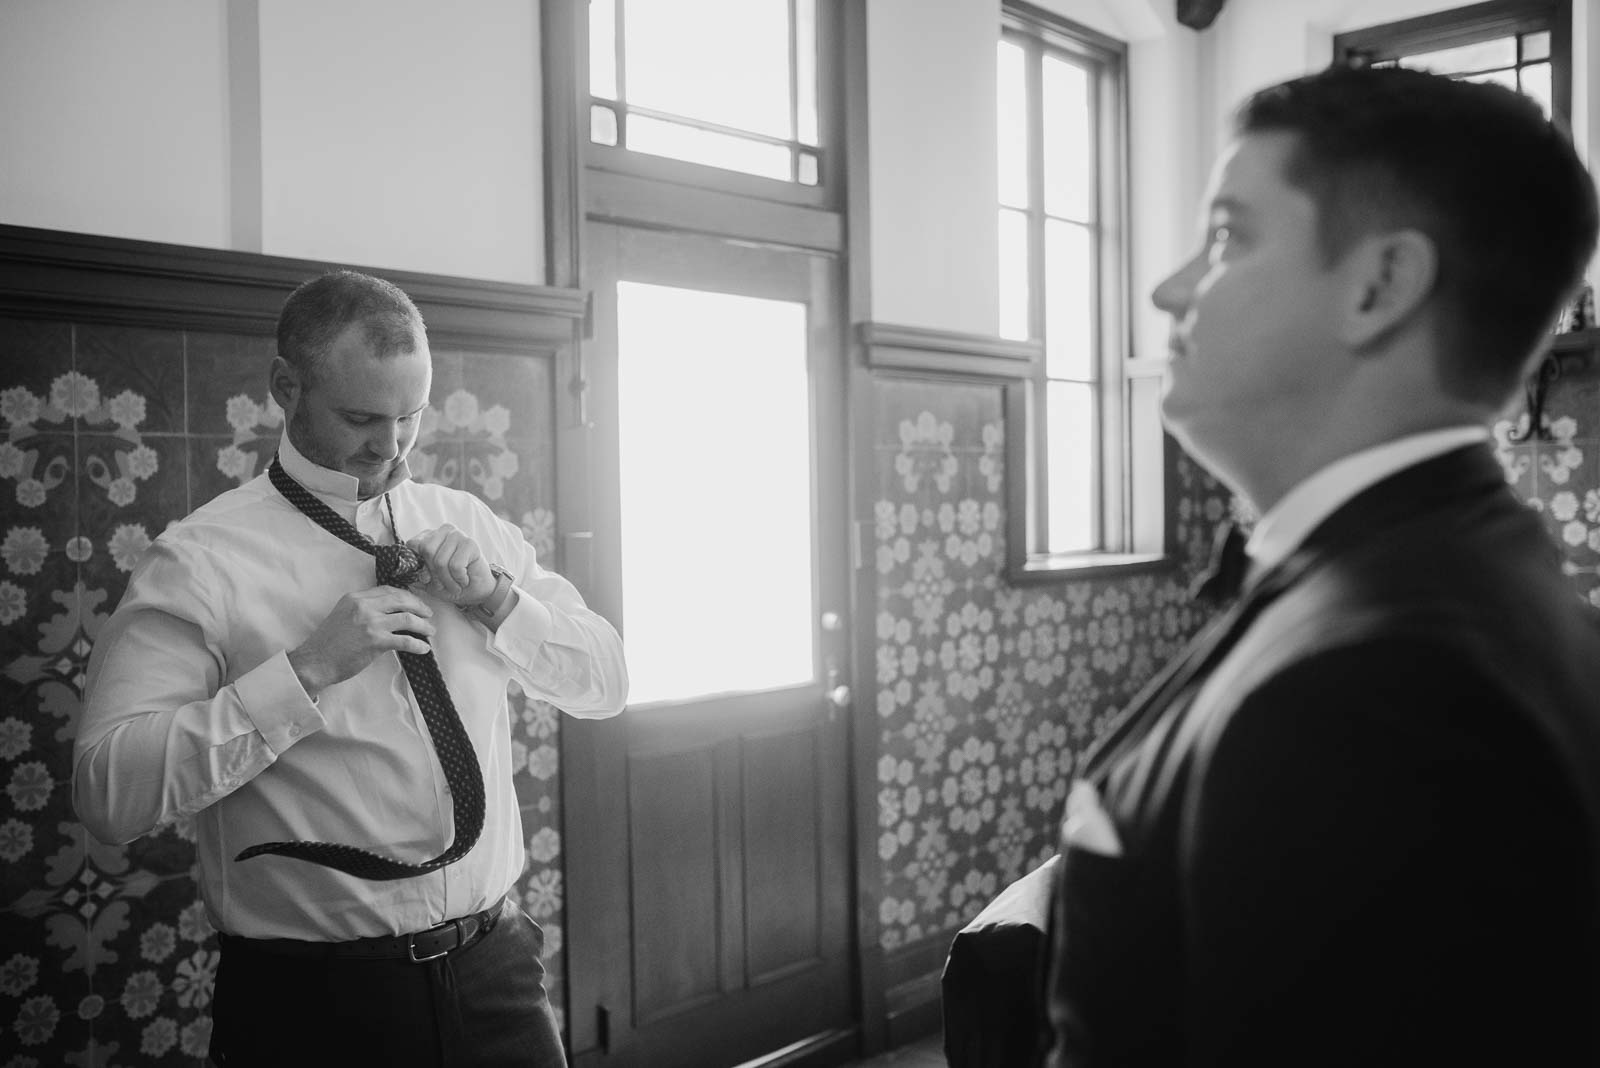 A groomsman put his tie on as the groom looks on